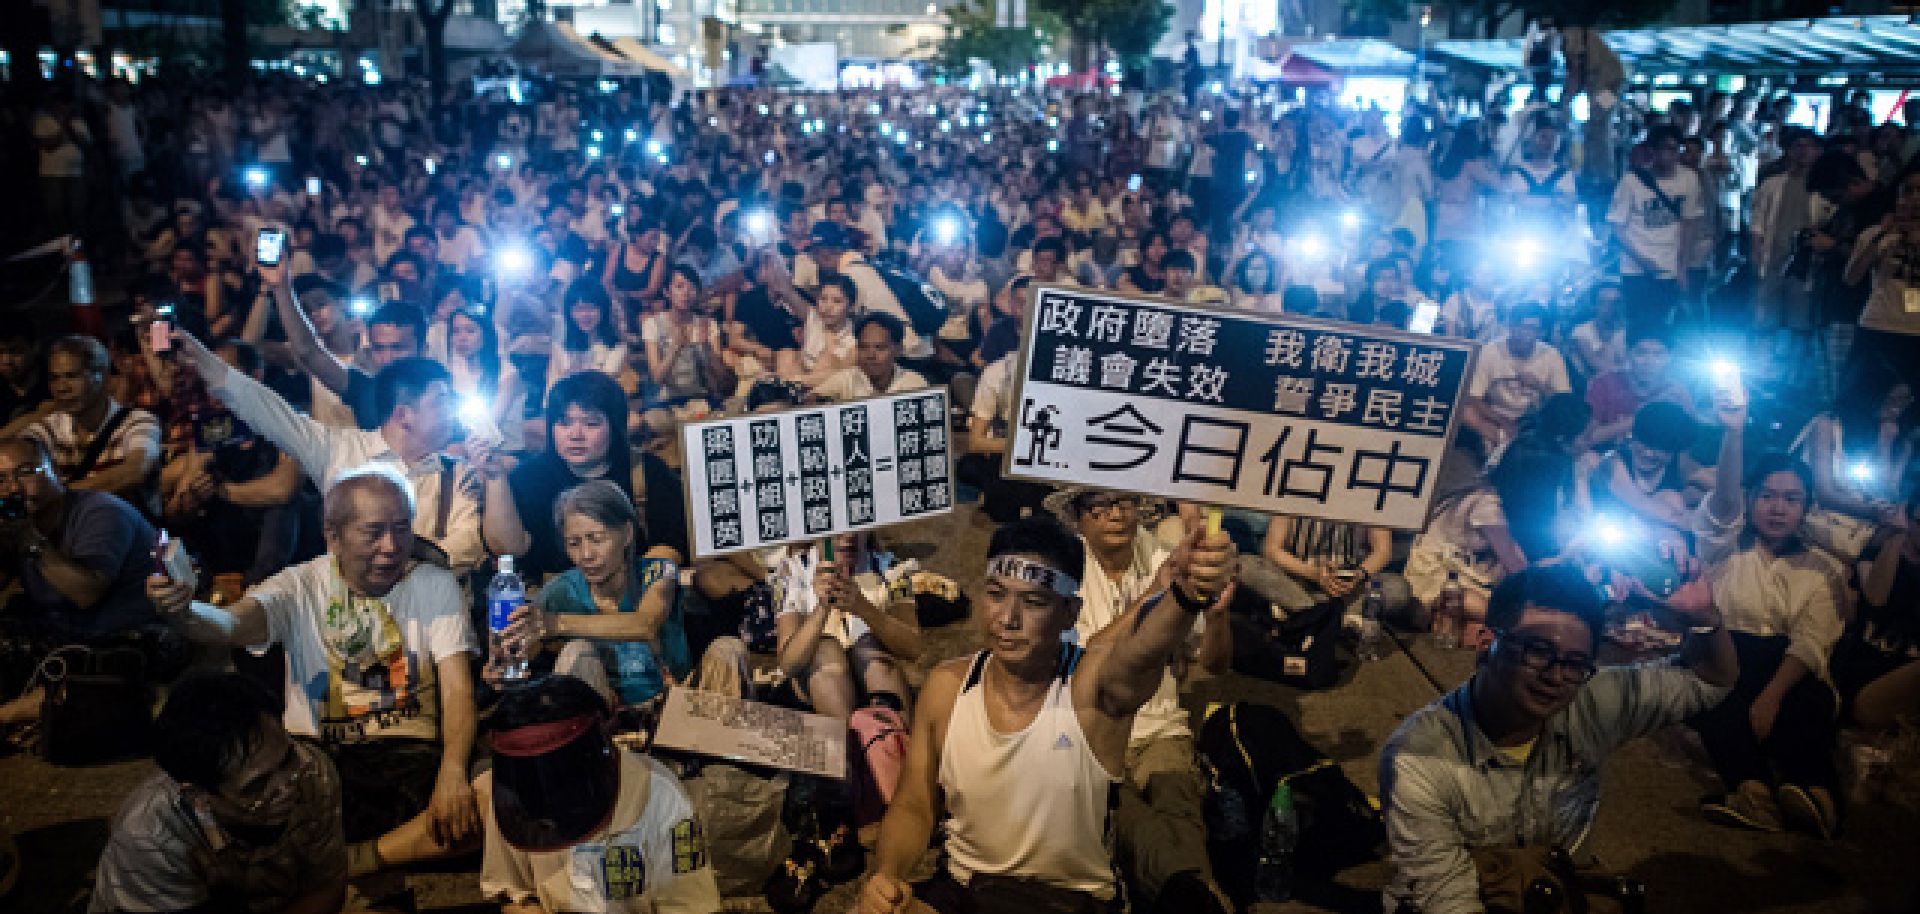 Hong Kong's Antagonism Toward Mainland China Rises Over Election